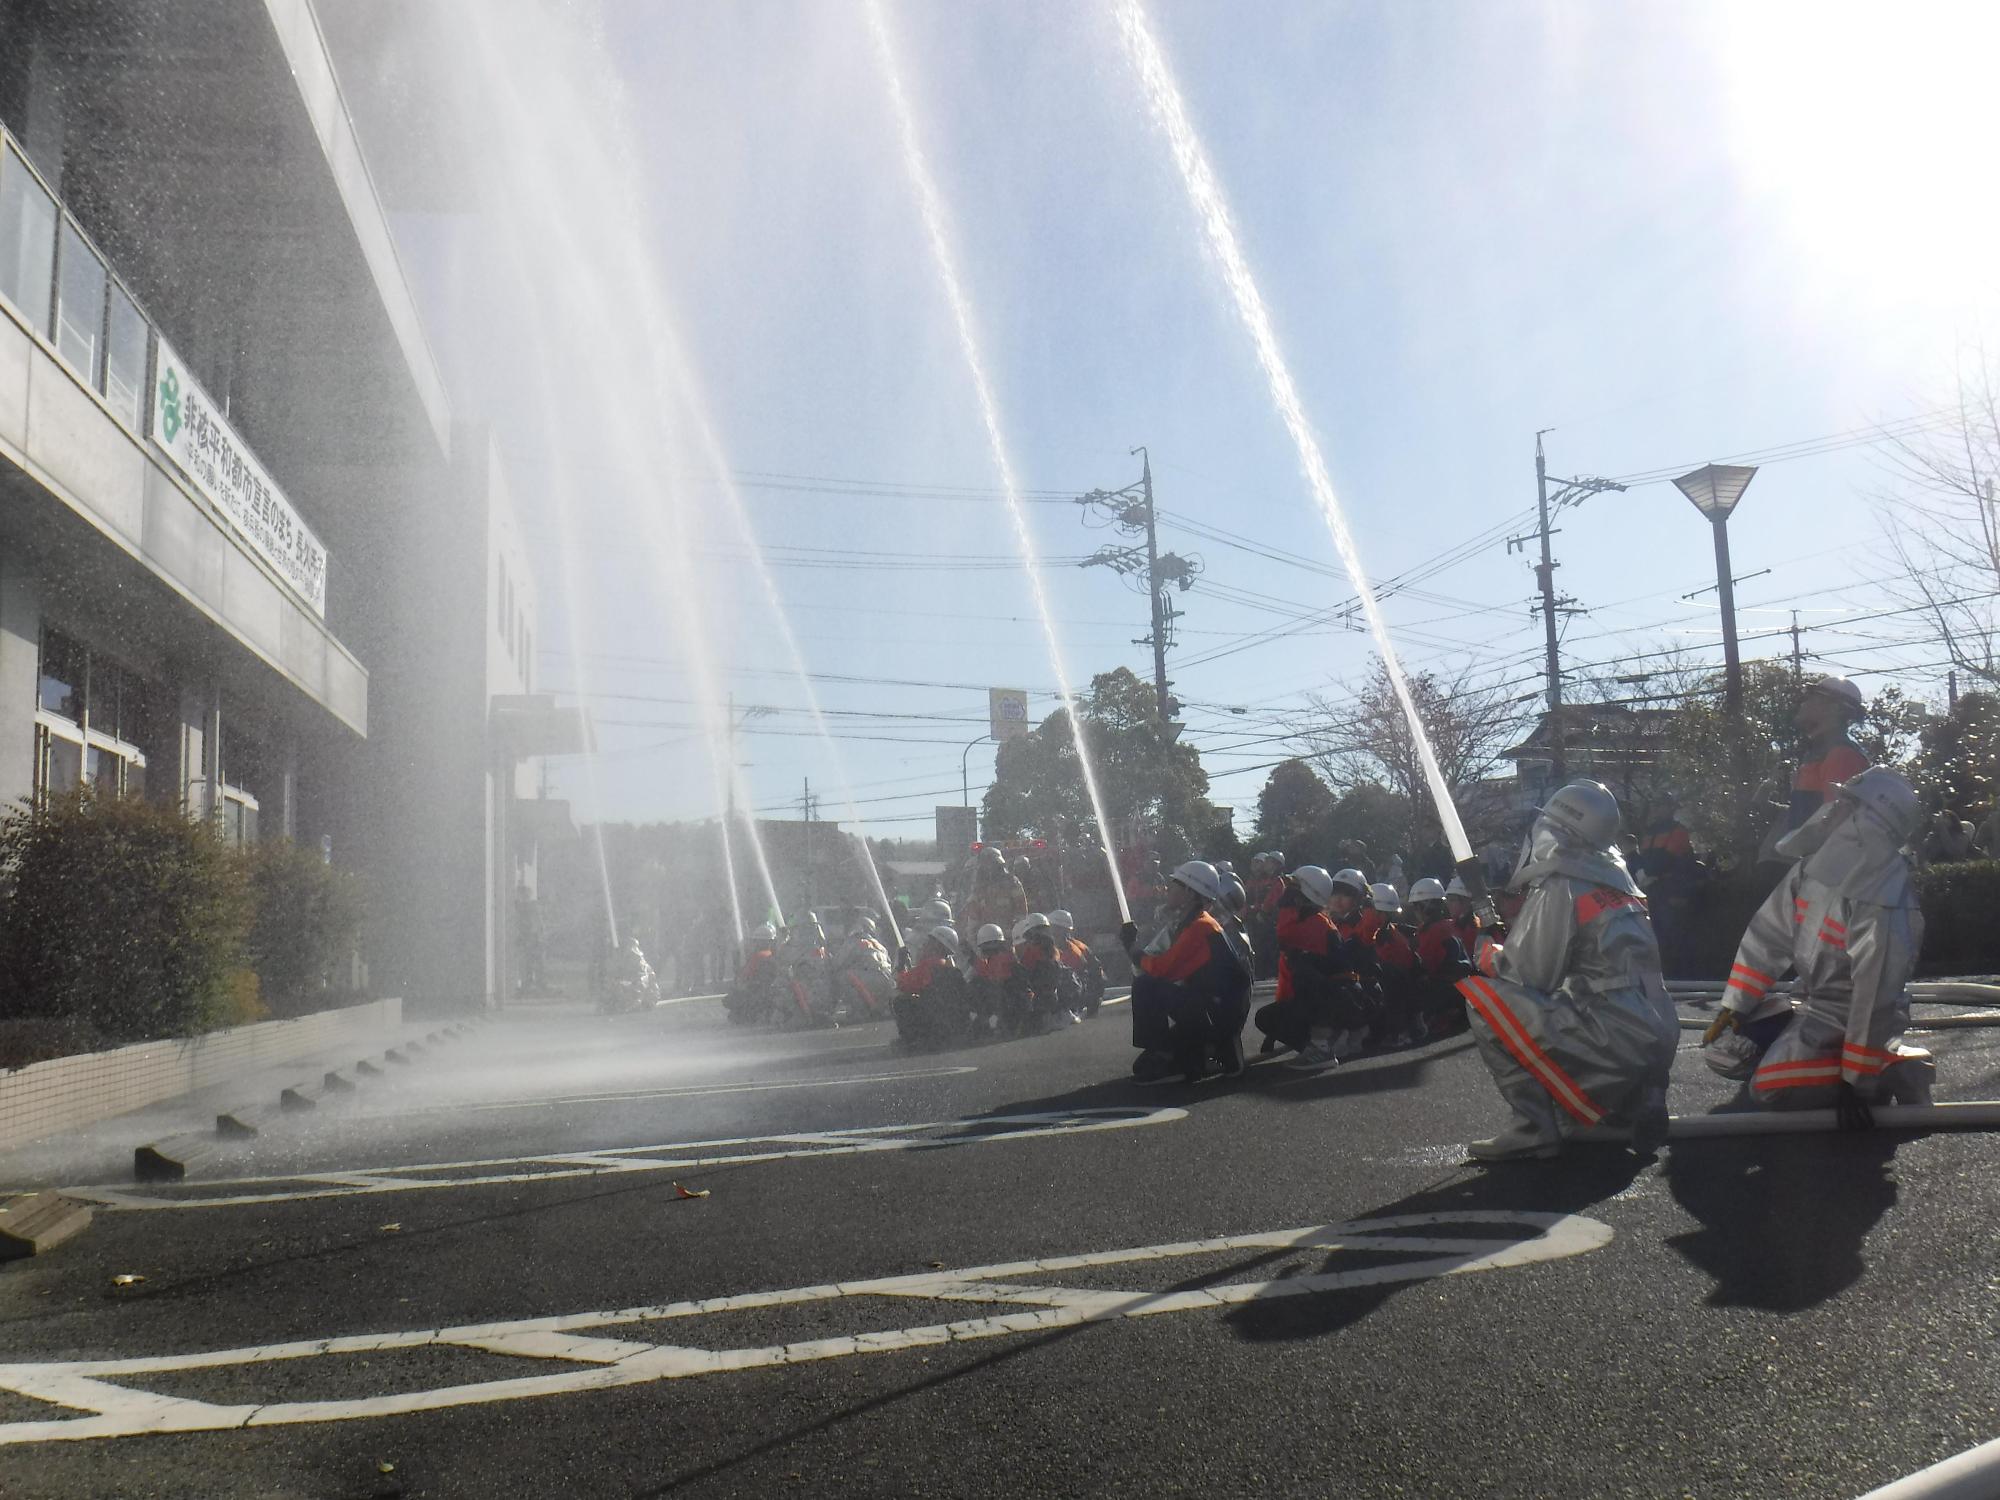 消防団員たちが建物に向かって放水している様子を横から撮影している写真